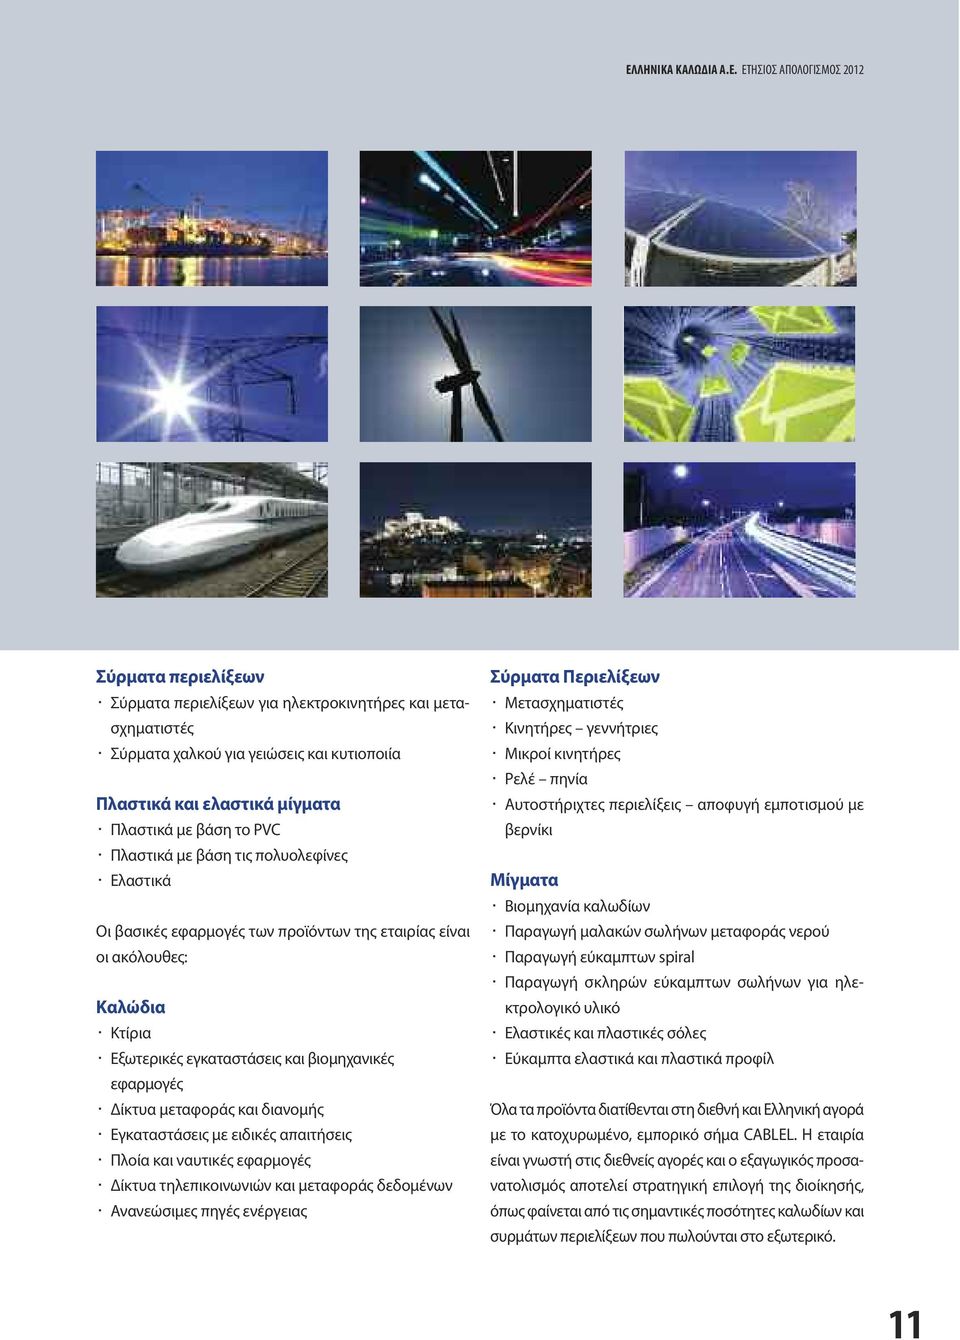 εφαρμογές Δίκτυα μεταφοράς και διανομής Εγκαταστάσεις με ειδικές απαιτήσεις Πλοία και ναυτικές εφαρμογές Δίκτυα τηλεπικοινωνιών και μεταφοράς δεδομένων Ανανεώσιμες πηγές ενέργειας Σύρματα Περιελίξεων